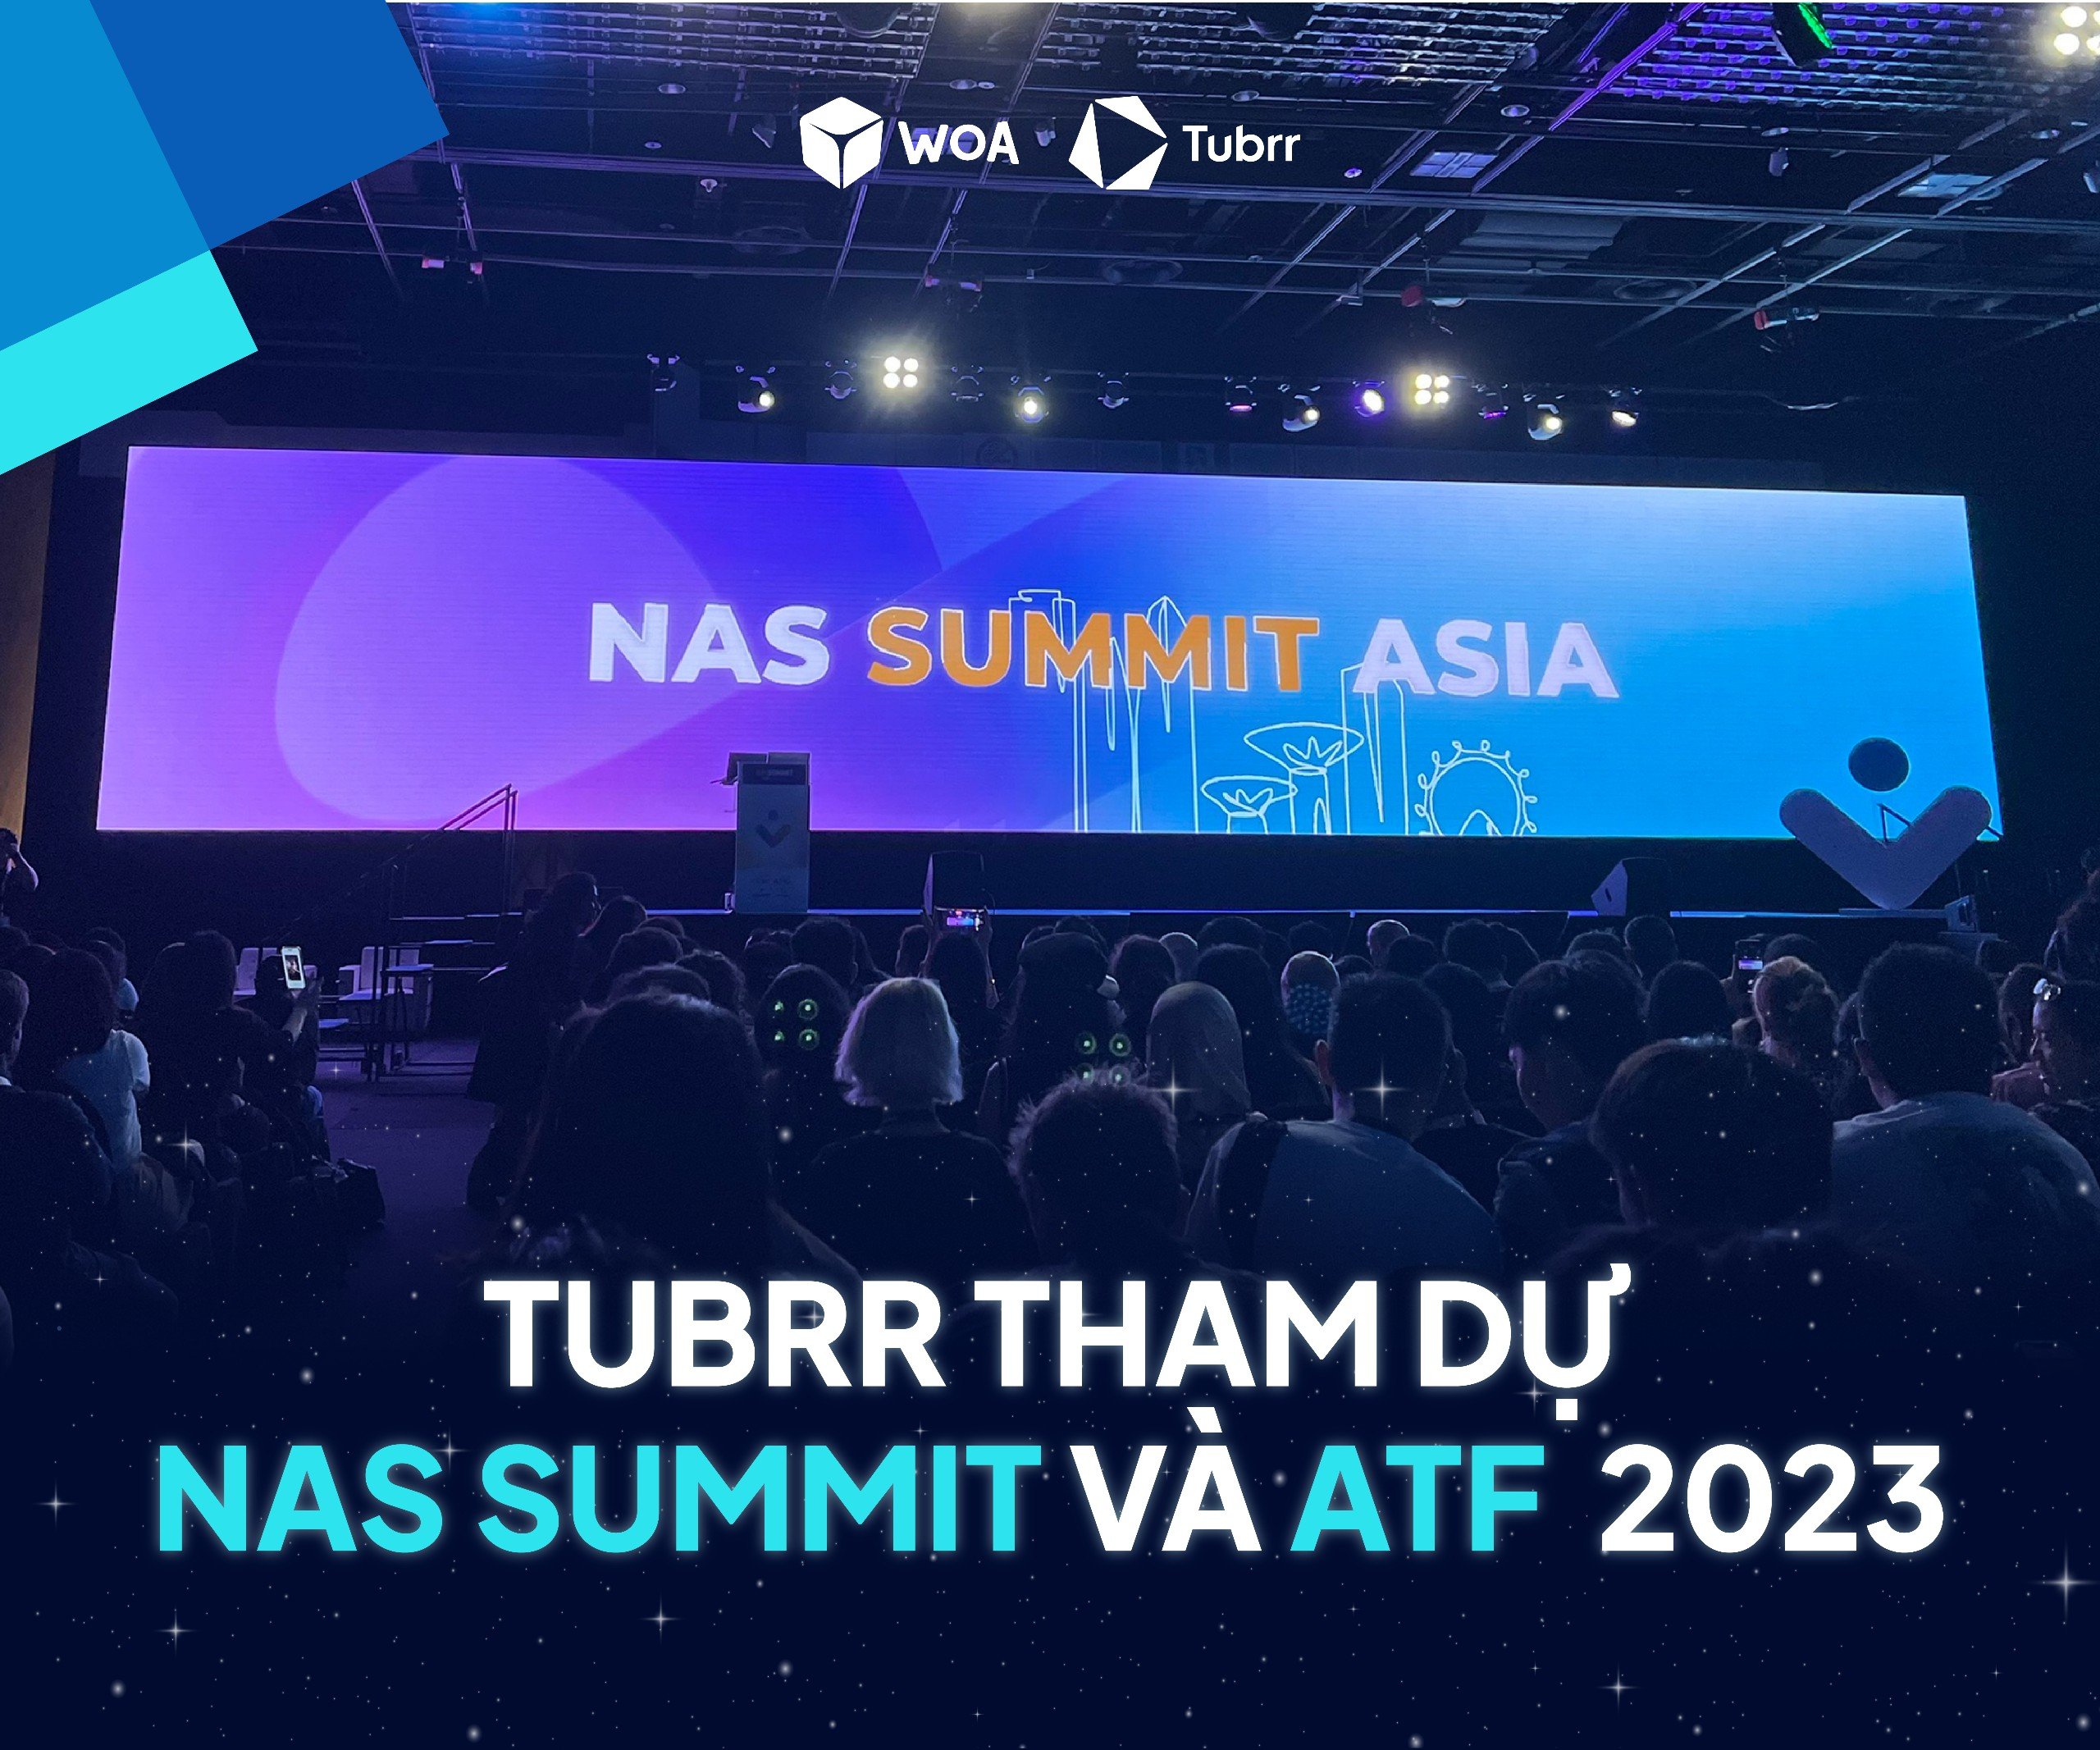 TUBRR vinh dự được tham gia ATF và NAS SUMMIT ASIA 2023